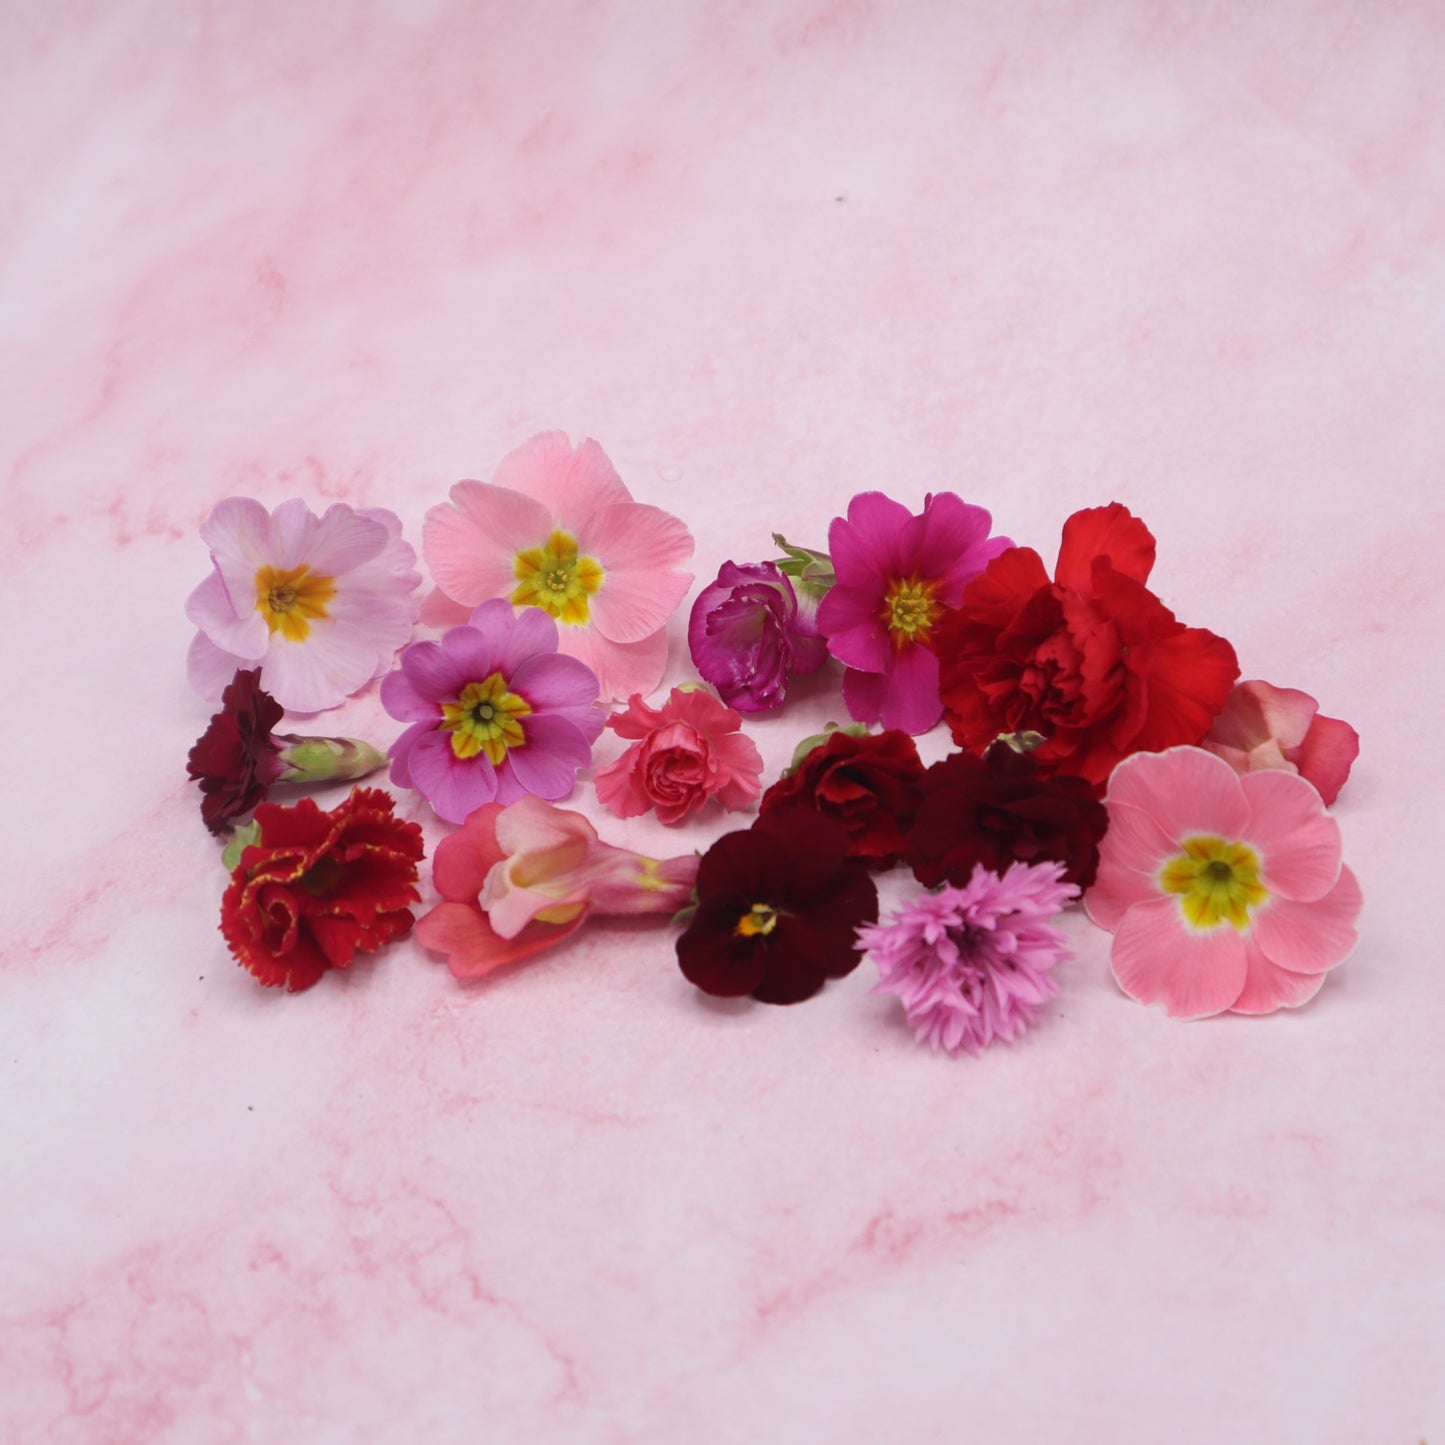 liefdes mix , valentijn eetbare bloemen. rood en roze romantisch